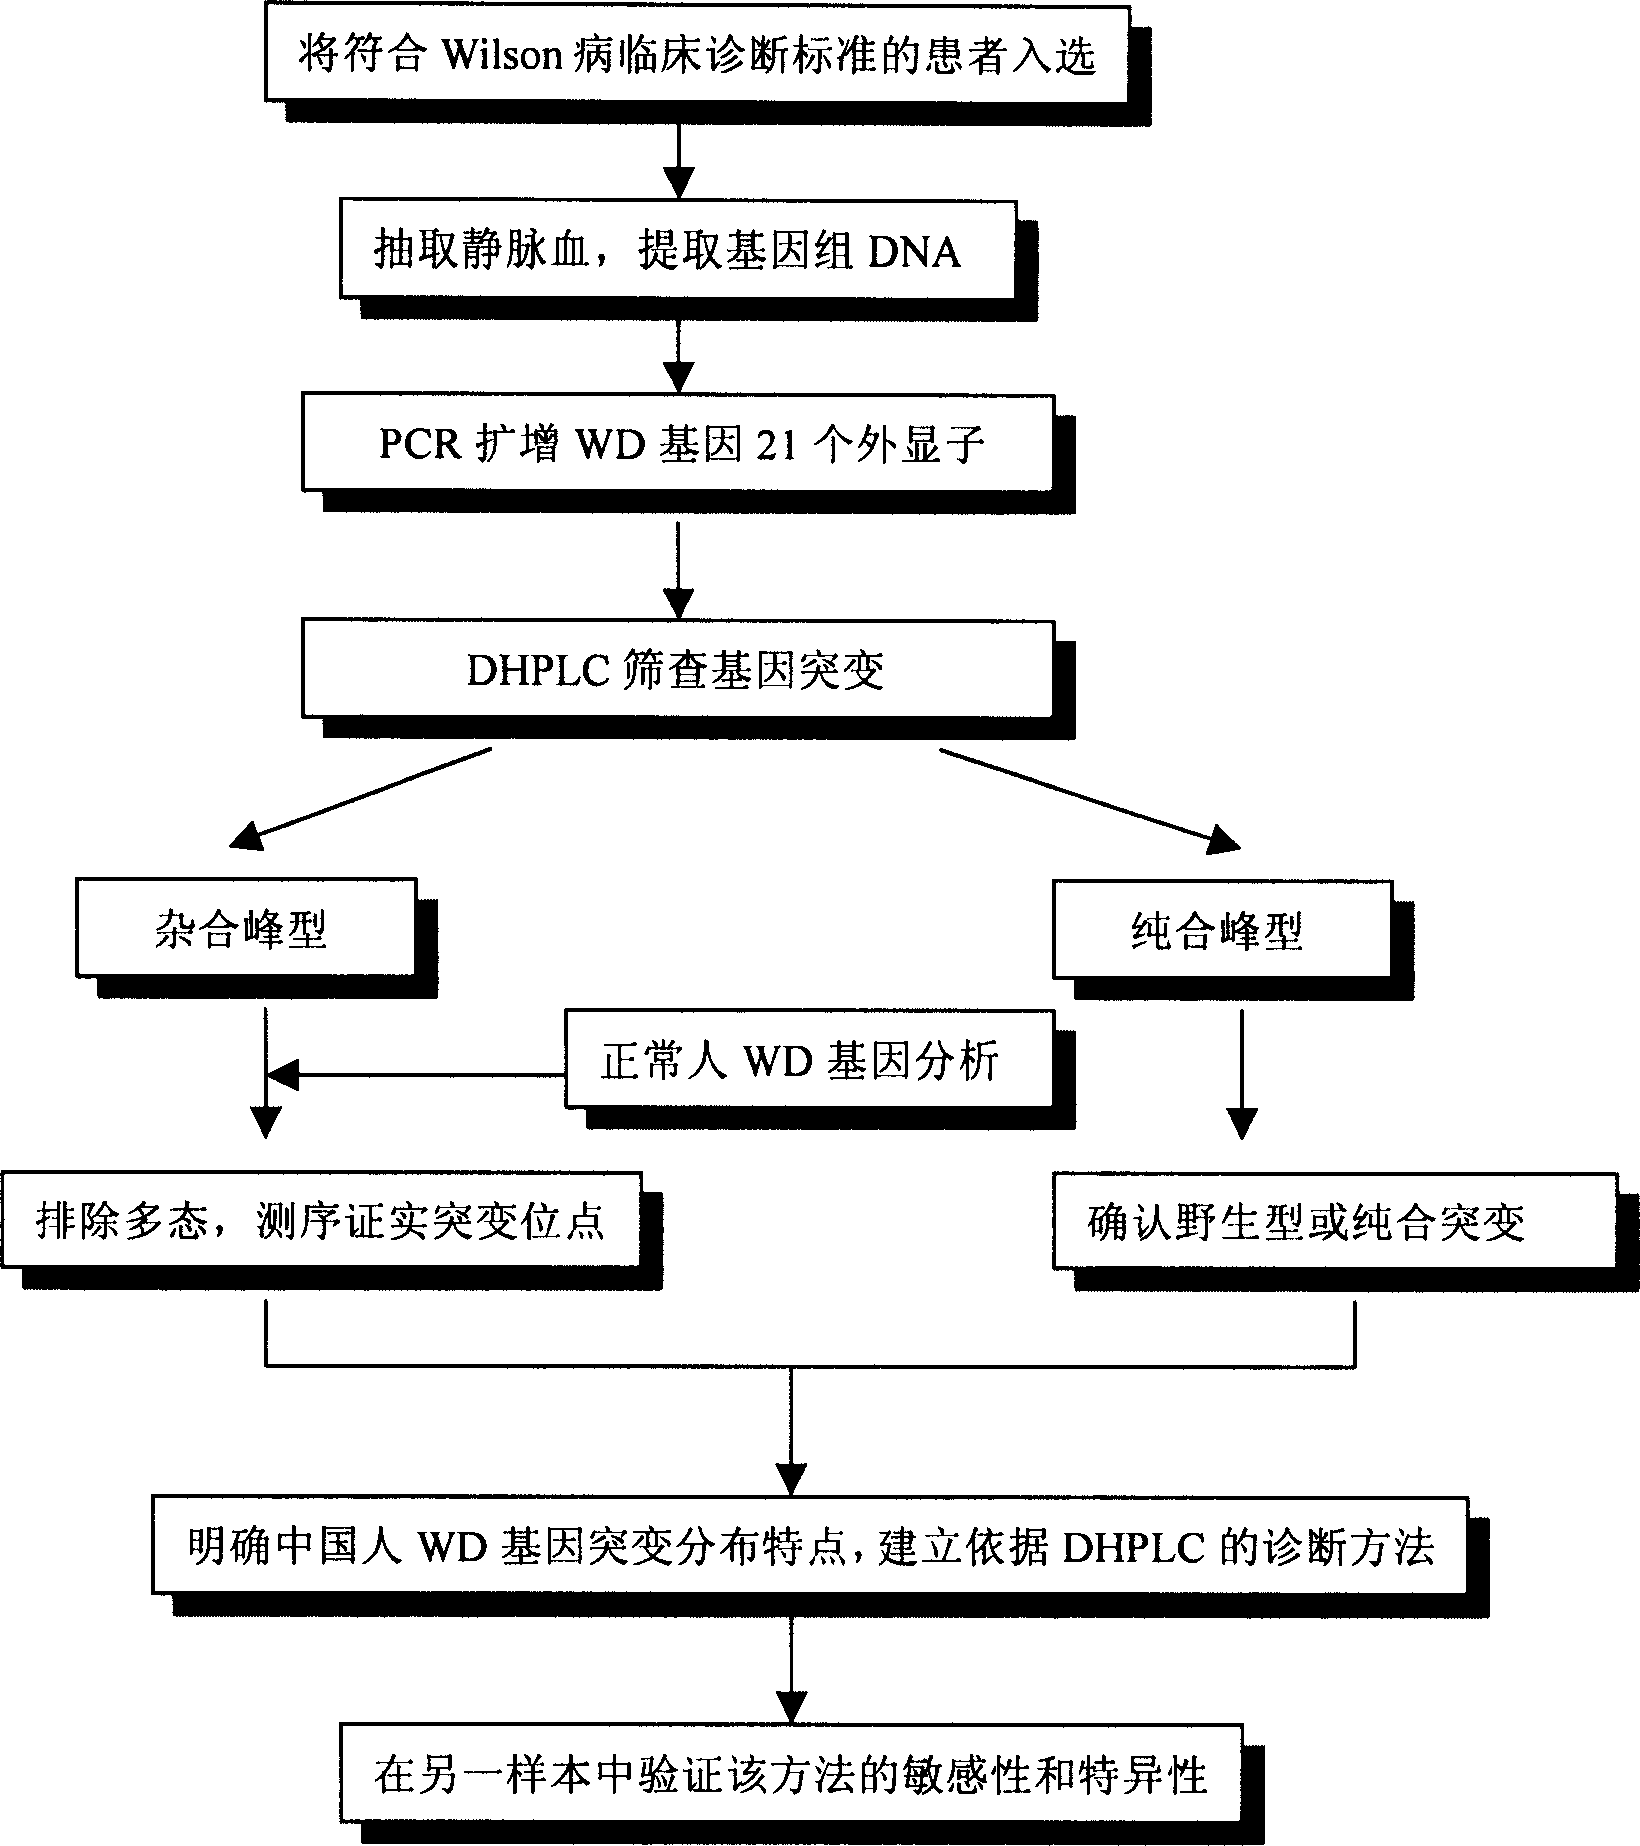 Gene mutation type and gene order surveying method